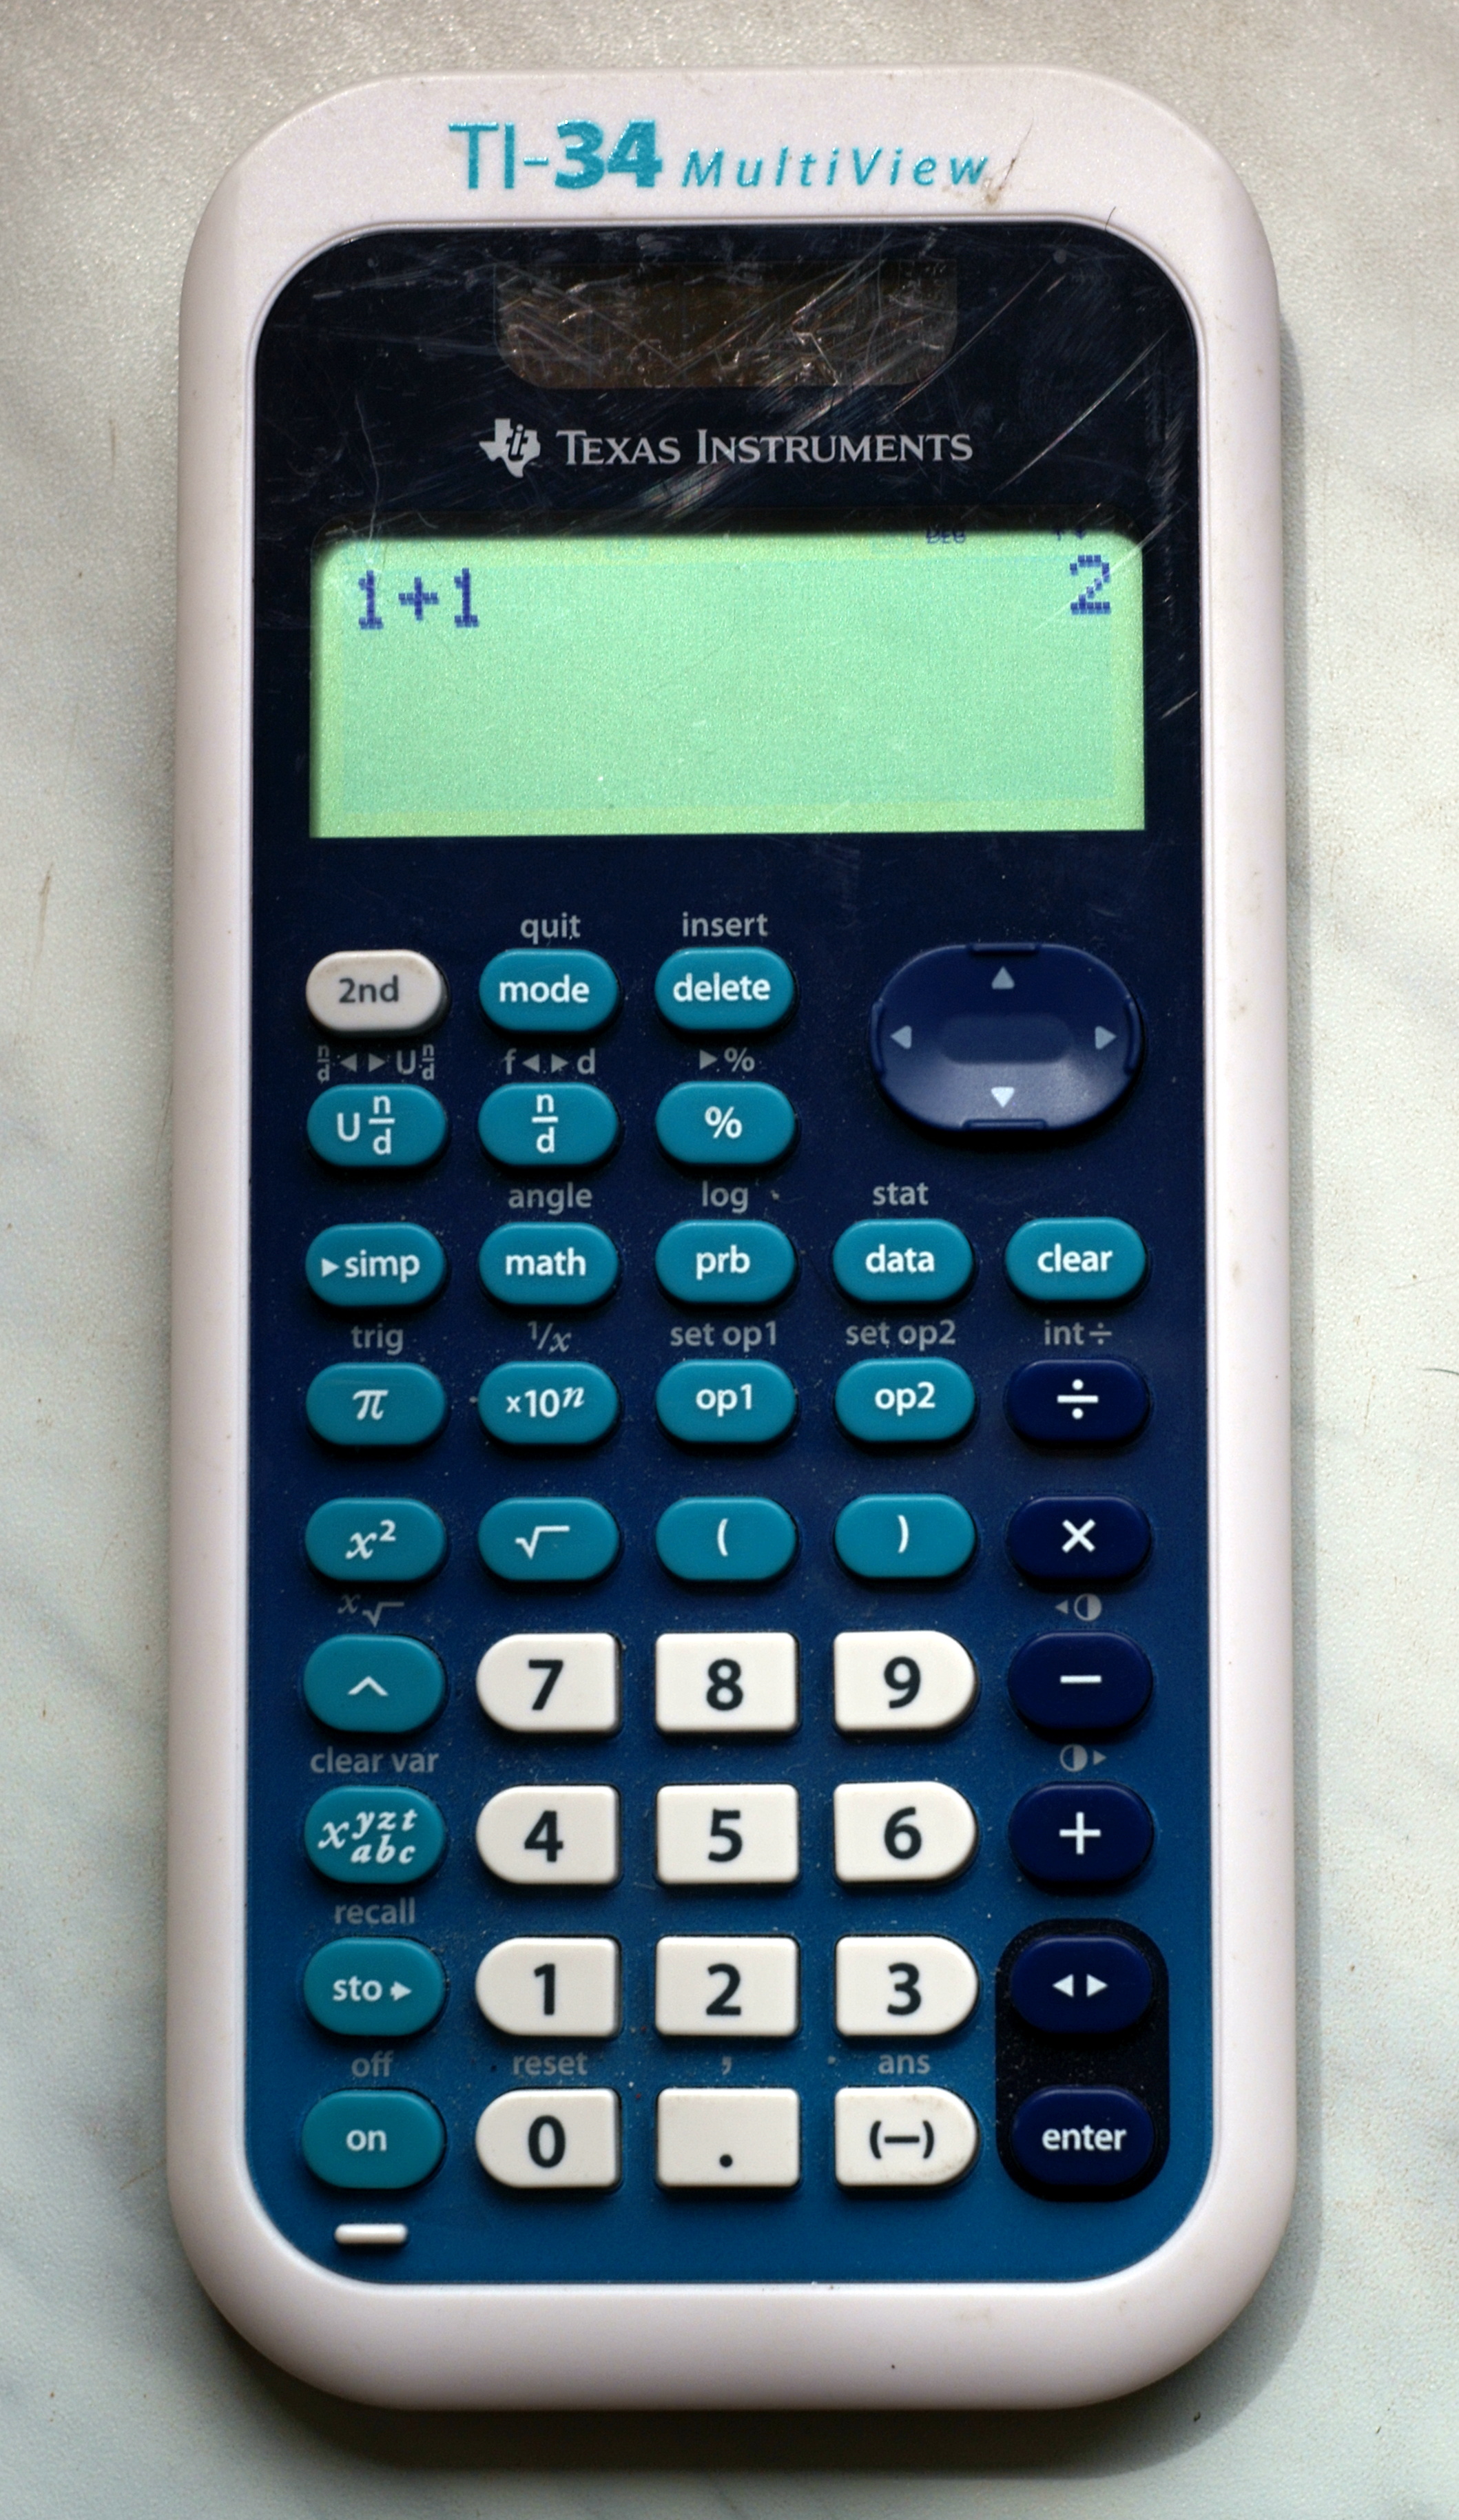 Kalkulačka